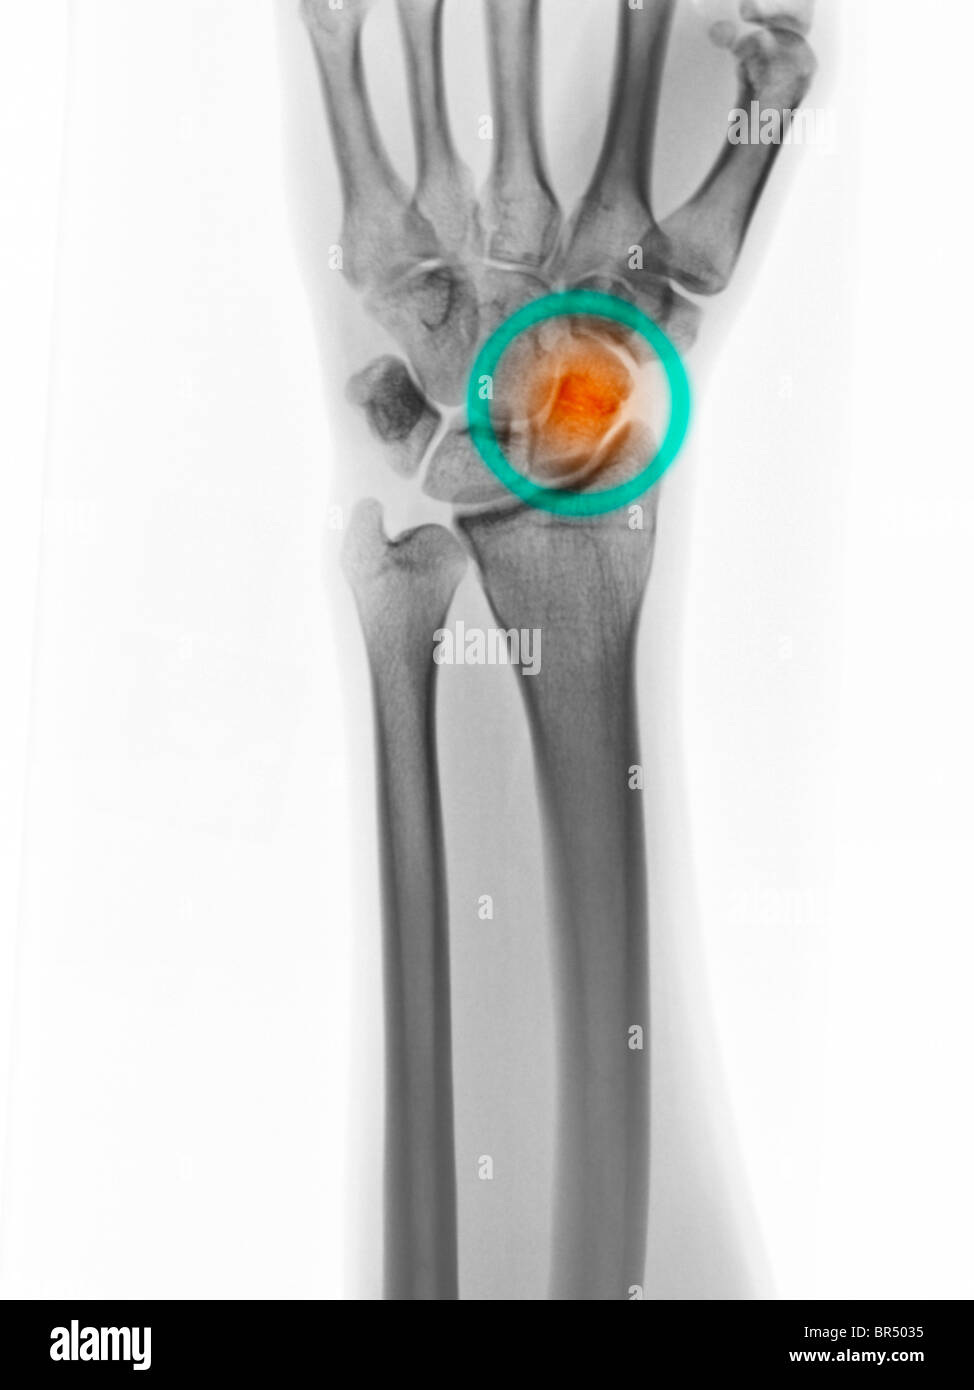 Radiografía de la mano mostrando una fractura del hueso escafoides o naviculares de la muñeca. Foto de stock